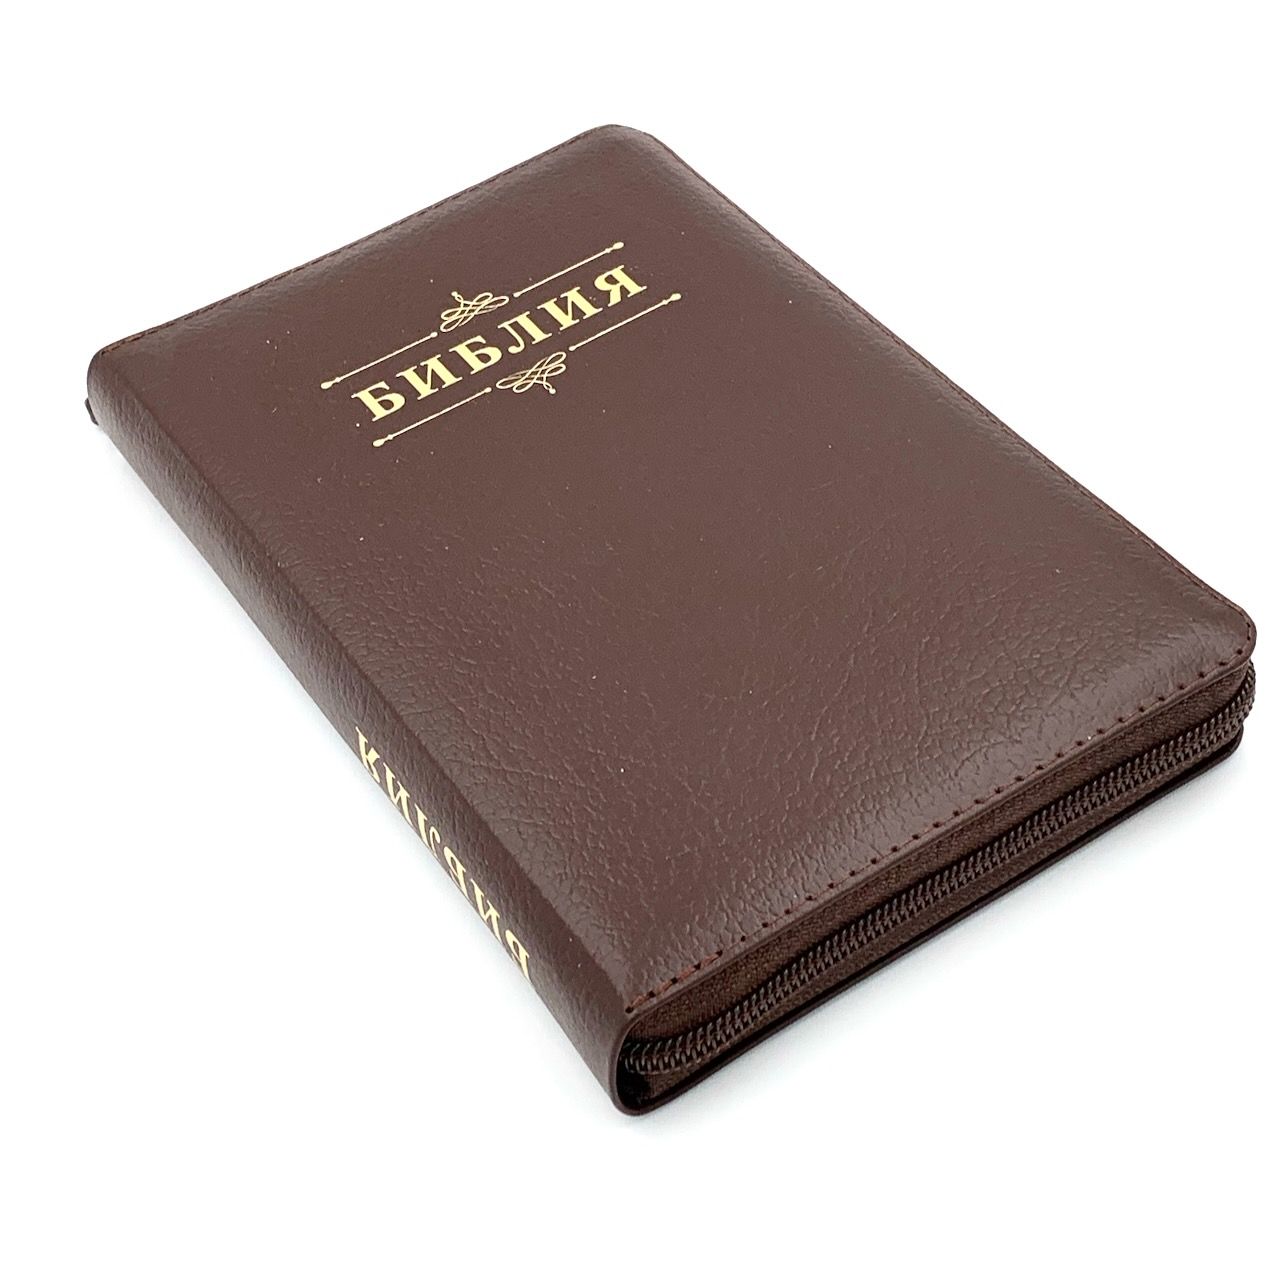 Библия 048 z код 24048-12 дизайн "Библия с вензелем", кожаный переплет на молнии, цвет коричневый пятнистый, формат 125*195 мм